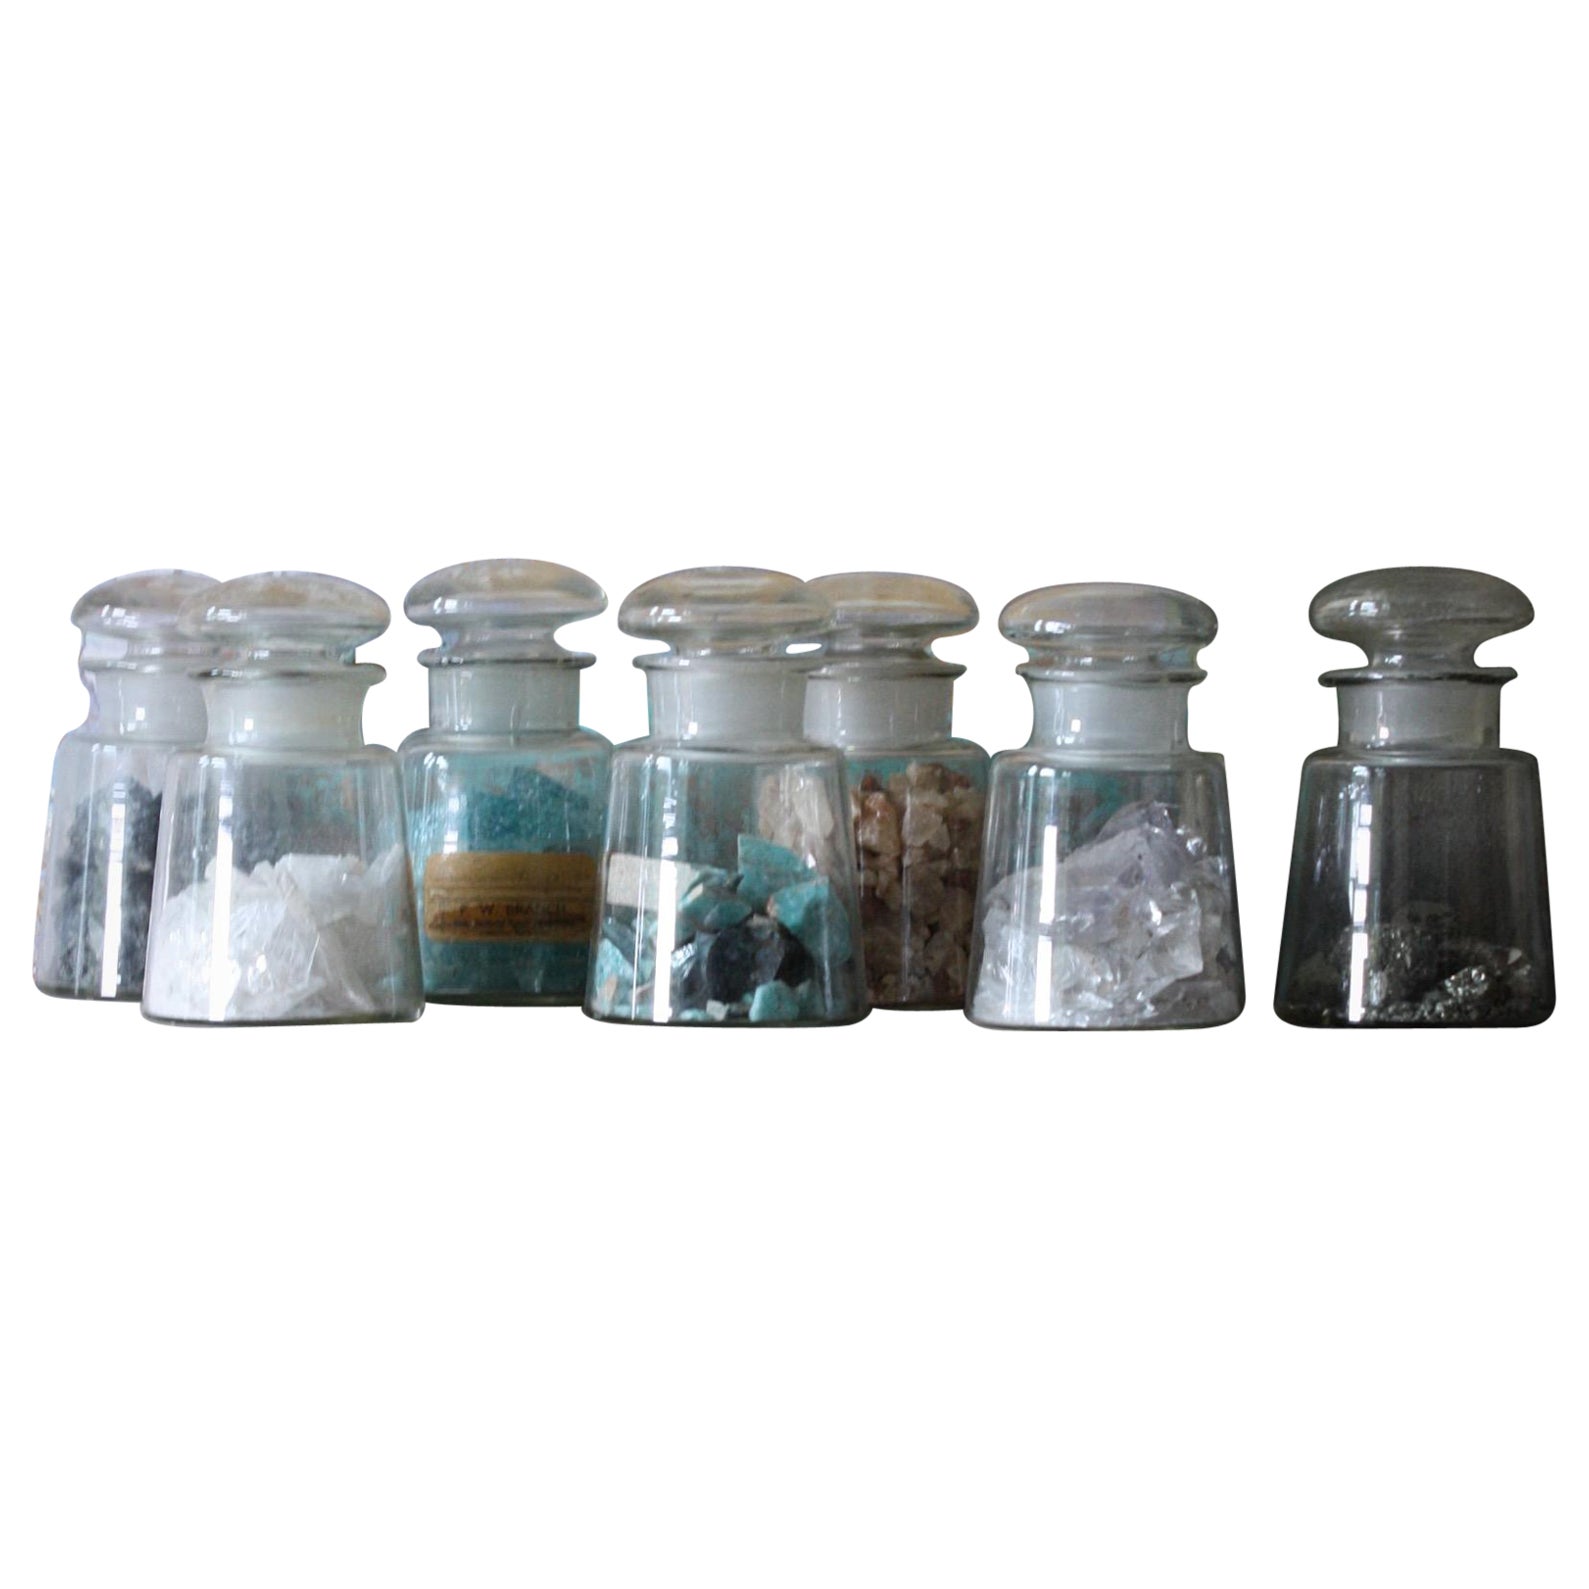 Collection de jarres à spécimens de minéralogie du début du 20e siècle, Curio d'histoire naturelle